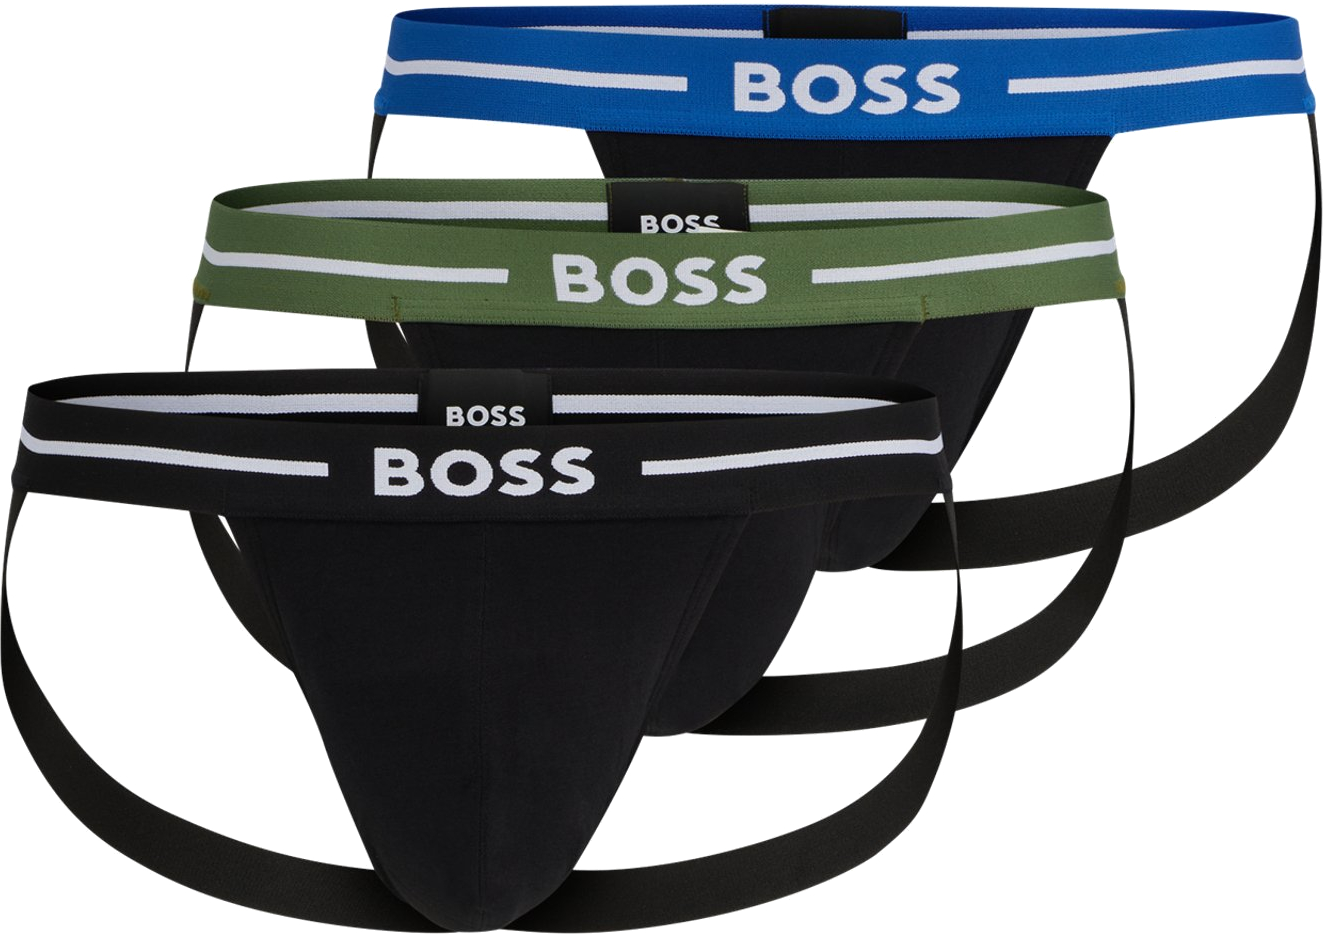 Hugo Boss 3 PACK - pánské slipy BOSS JOCK STRAP 50514965-965 XXL